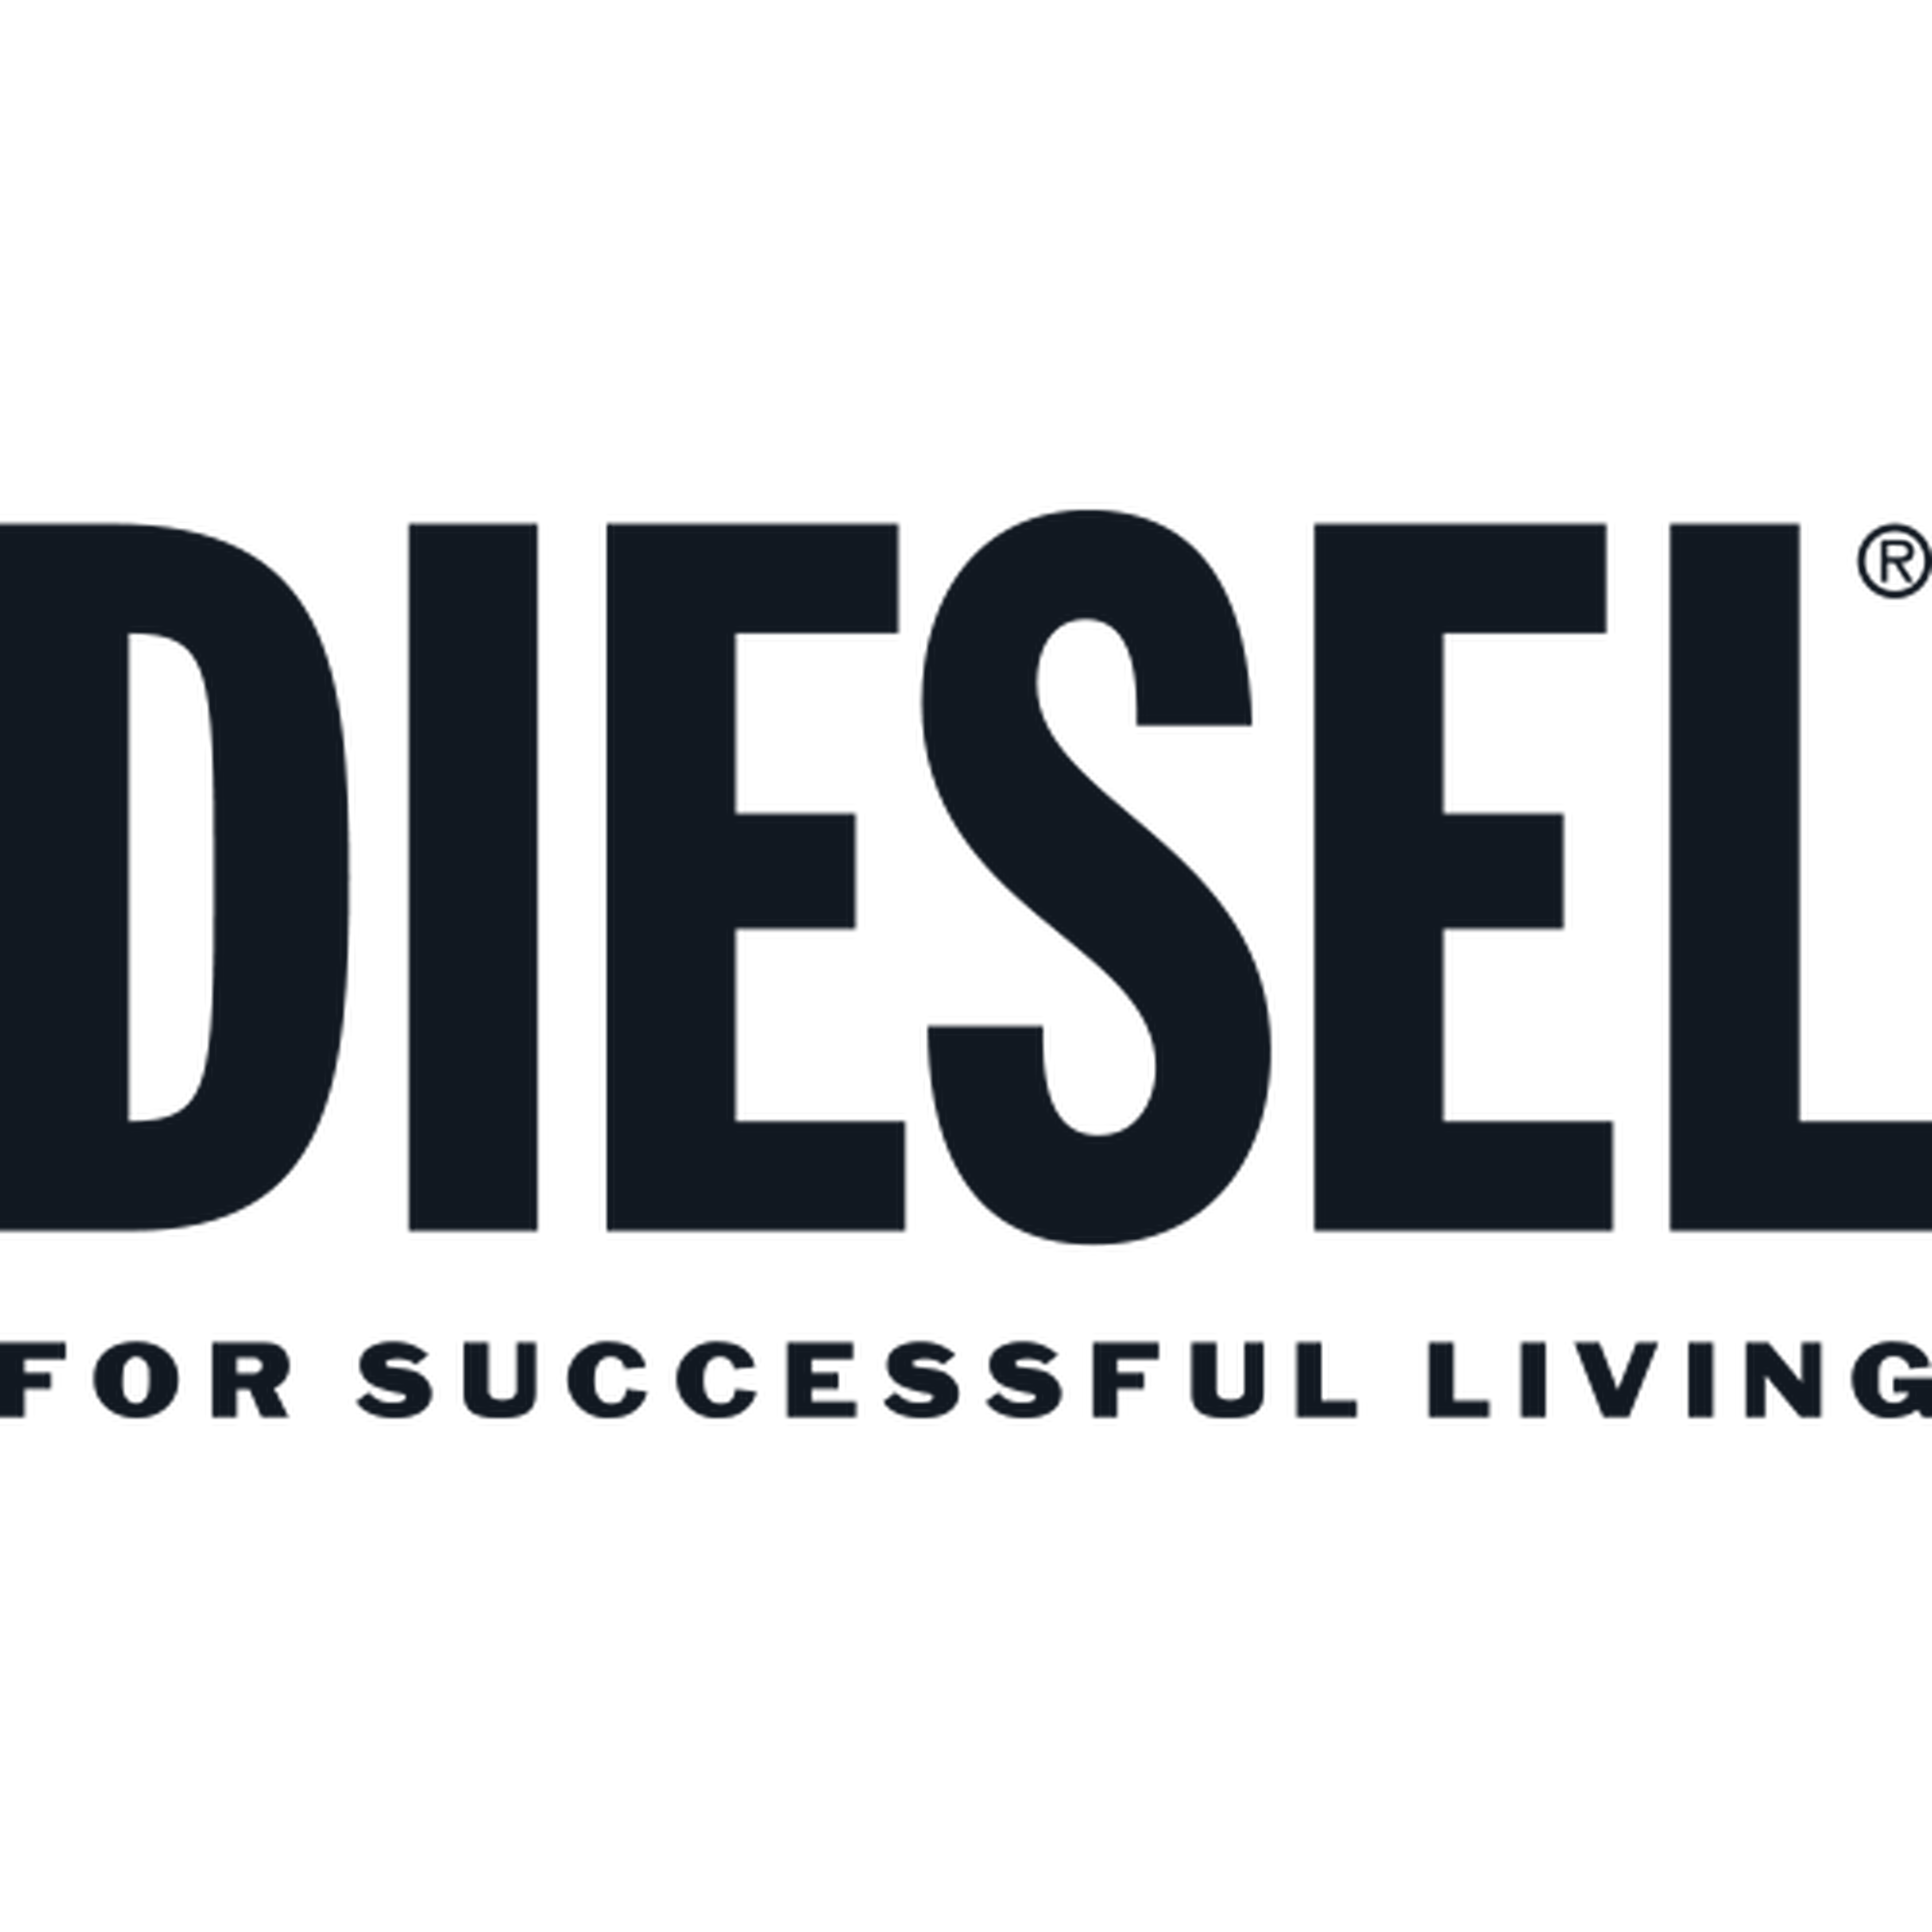 Diesel logotype